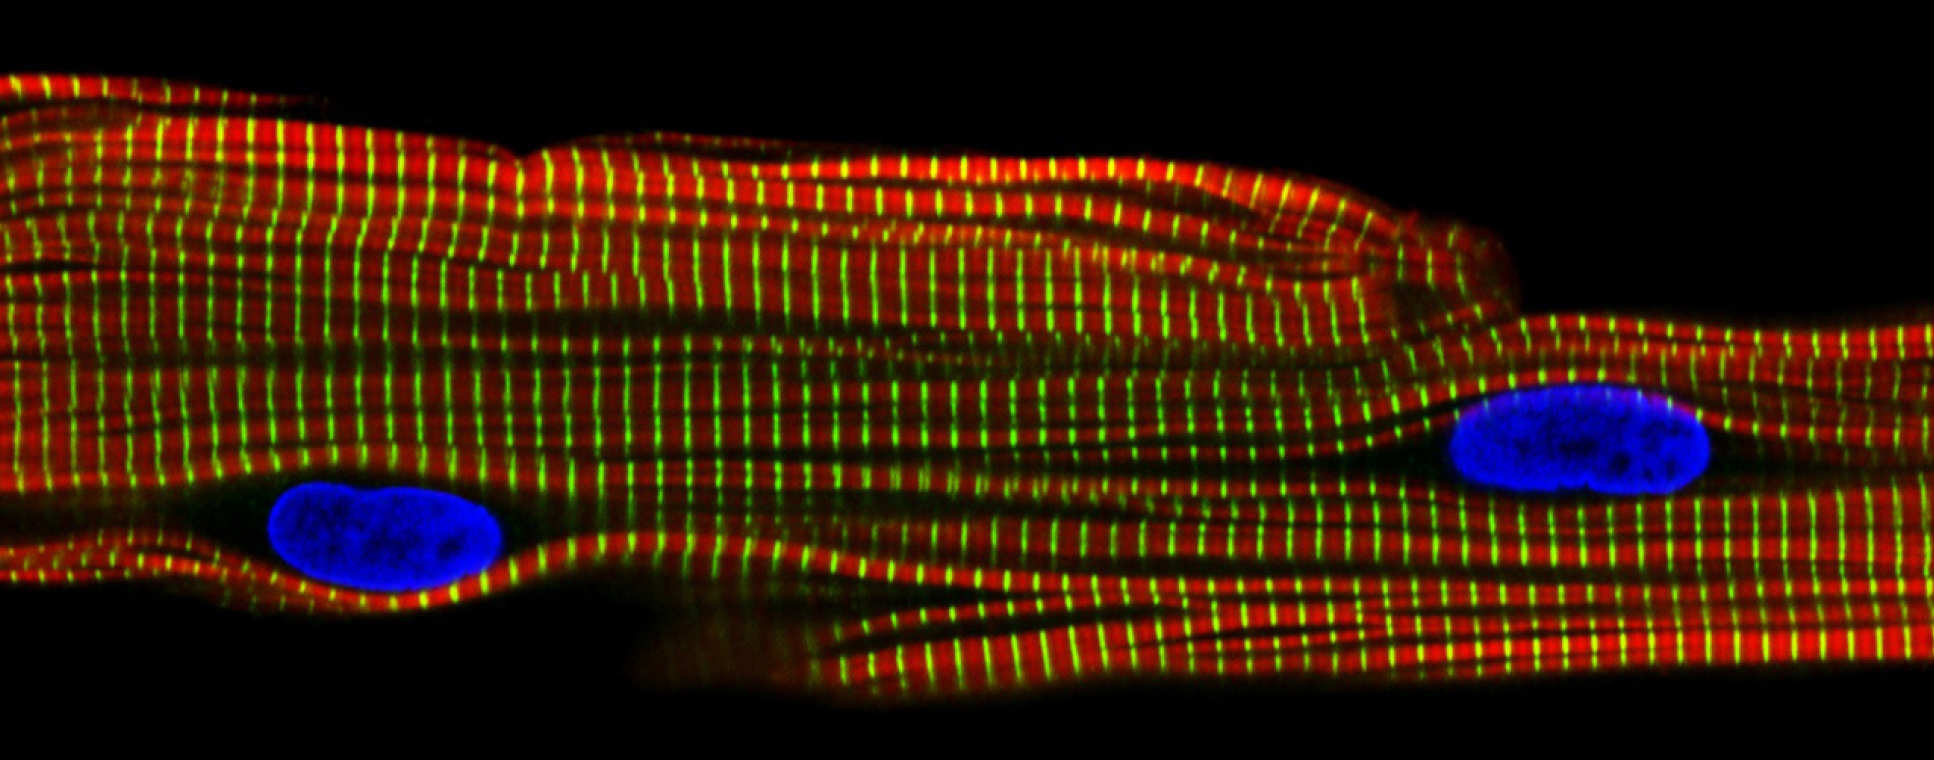 Microscopic image of mitochondria